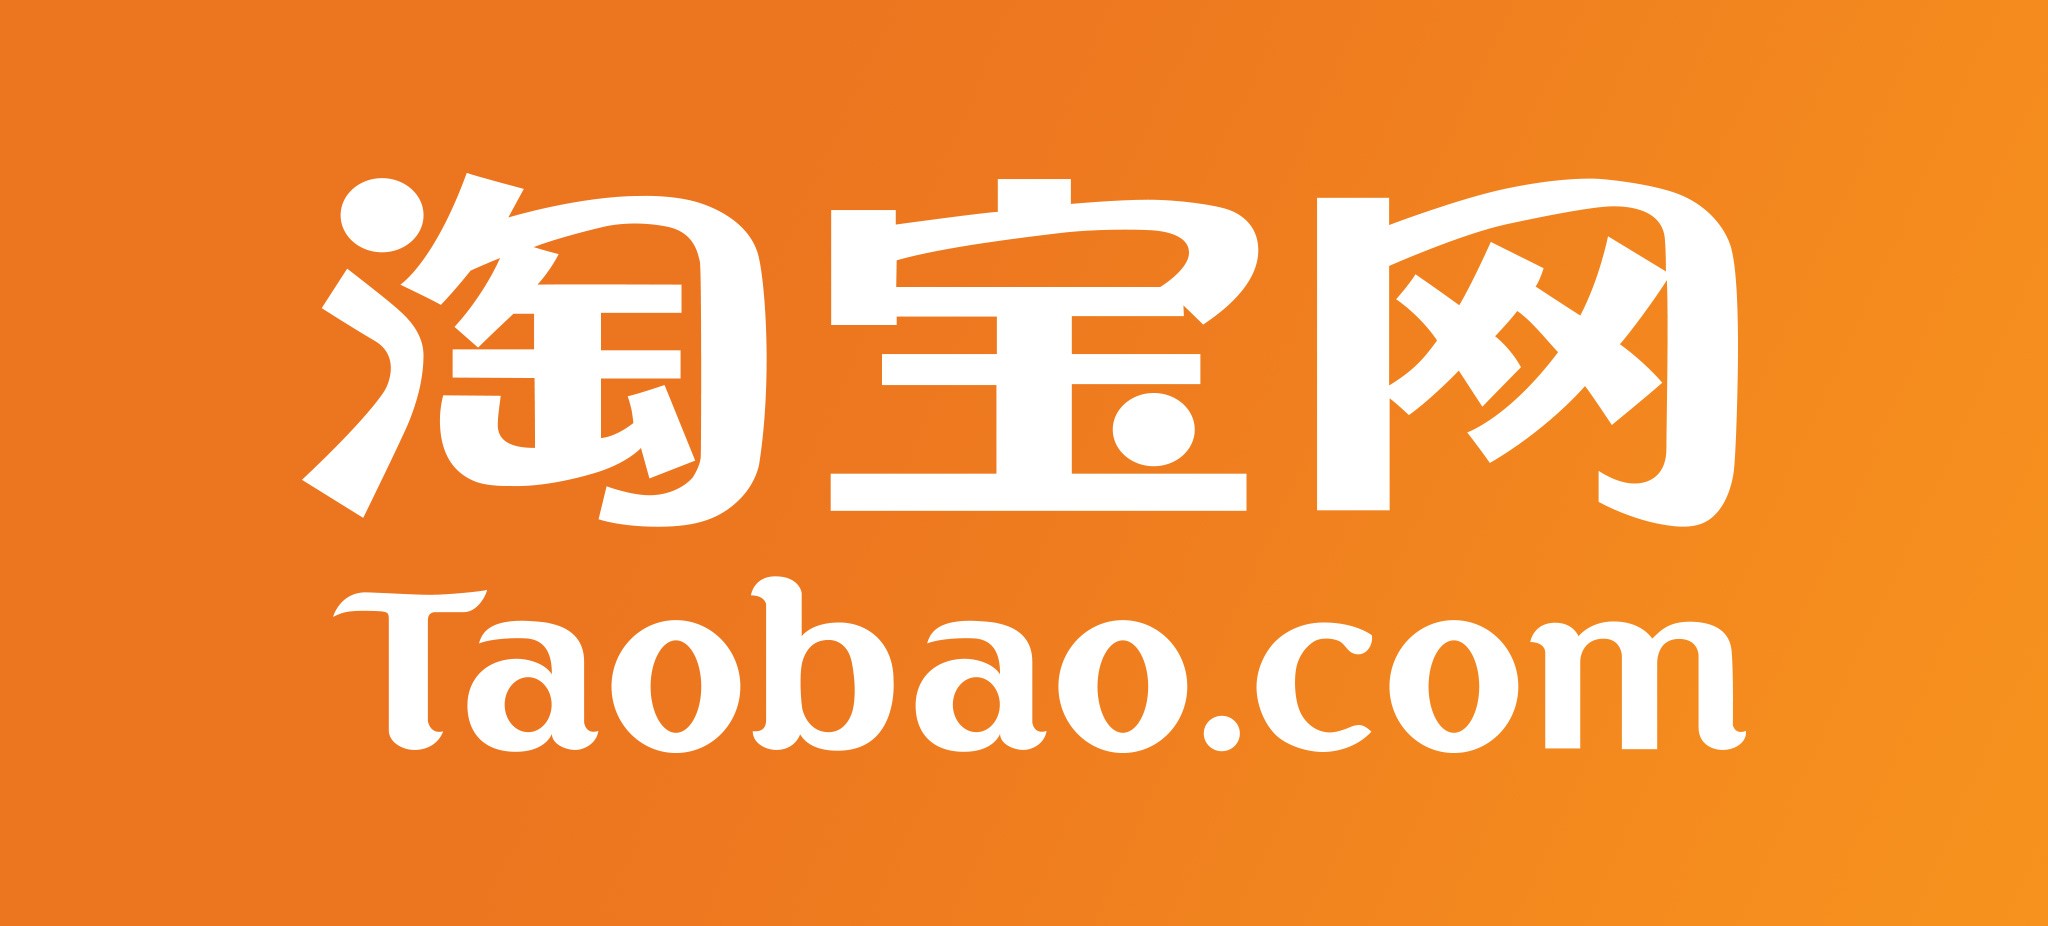 Taobao là một thế giới sản phẩm đa dạng, phong phú và có giá cả hợp lý. Nếu bạn muốn mua hàng ở Taobao, hãy liên hệ với chúng tôi. Chúng tôi sẽ giúp bạn đặt hàng, chọn sản phẩm và vận chuyển về đến tay bạn một cách nhanh chóng nhất. Hãy tin tưởng ở chúng tôi và đặt hàng từ Taobao ngay bây giờ!